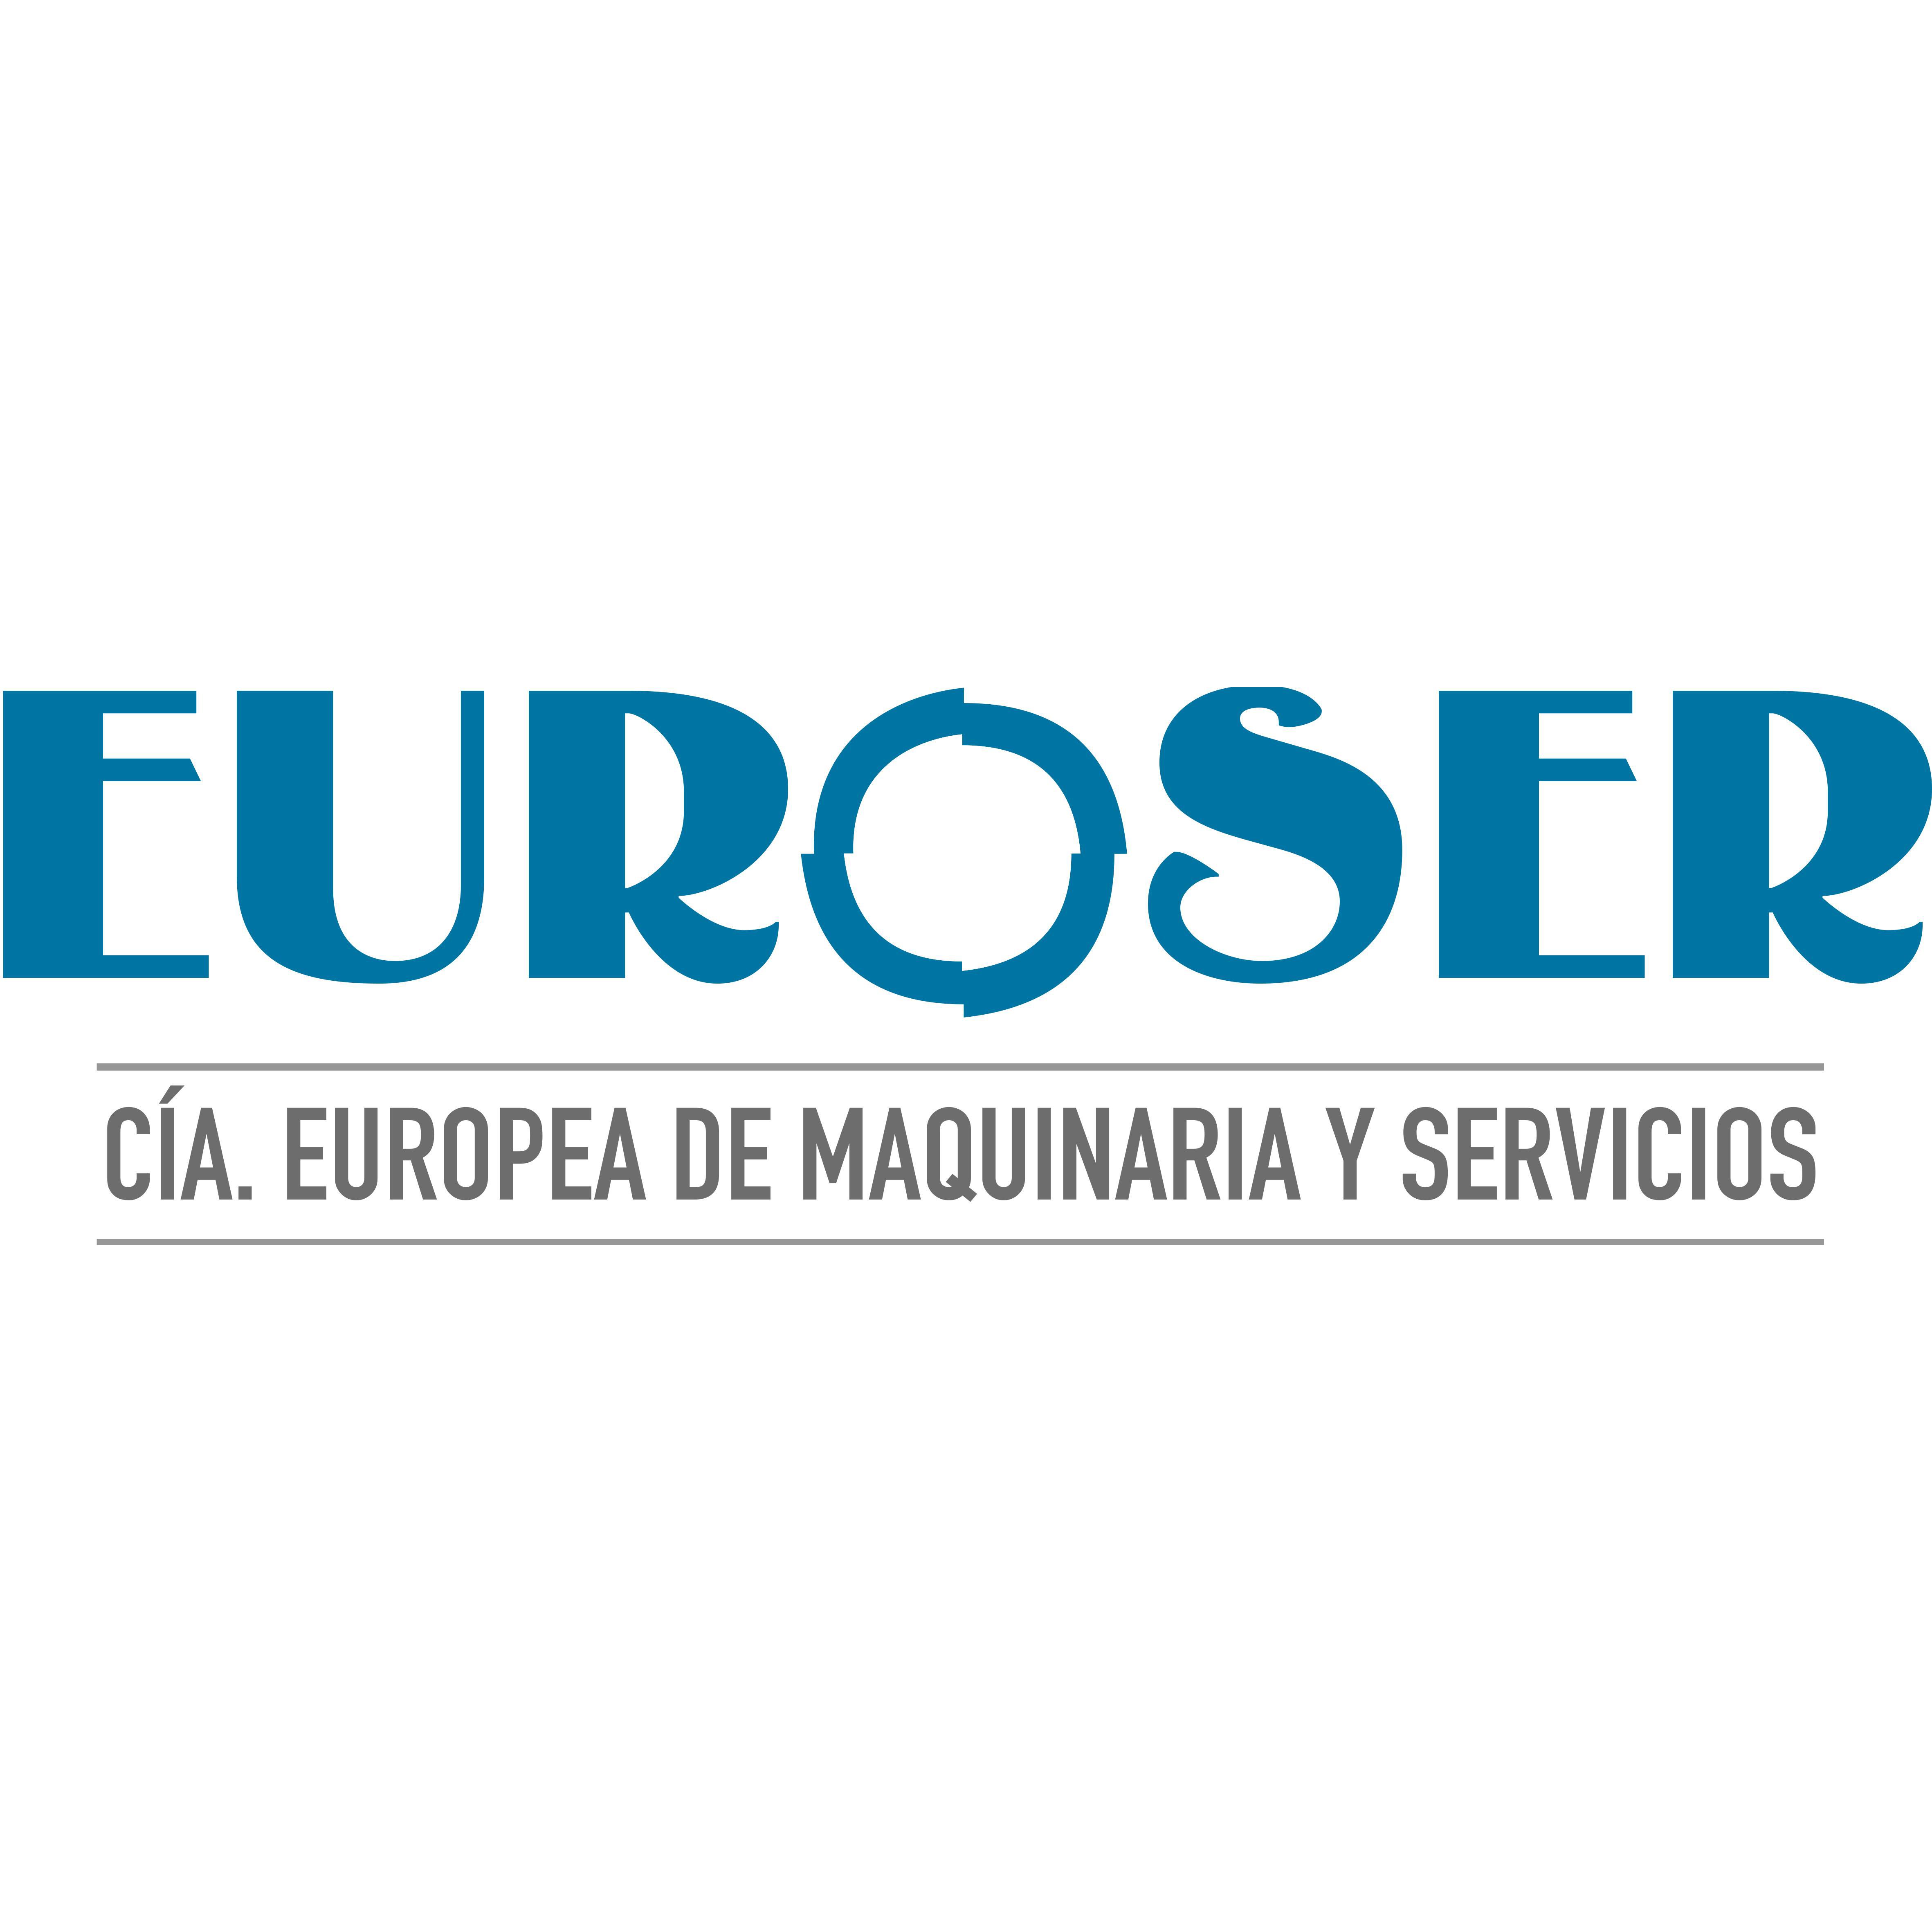 Euroser Logo